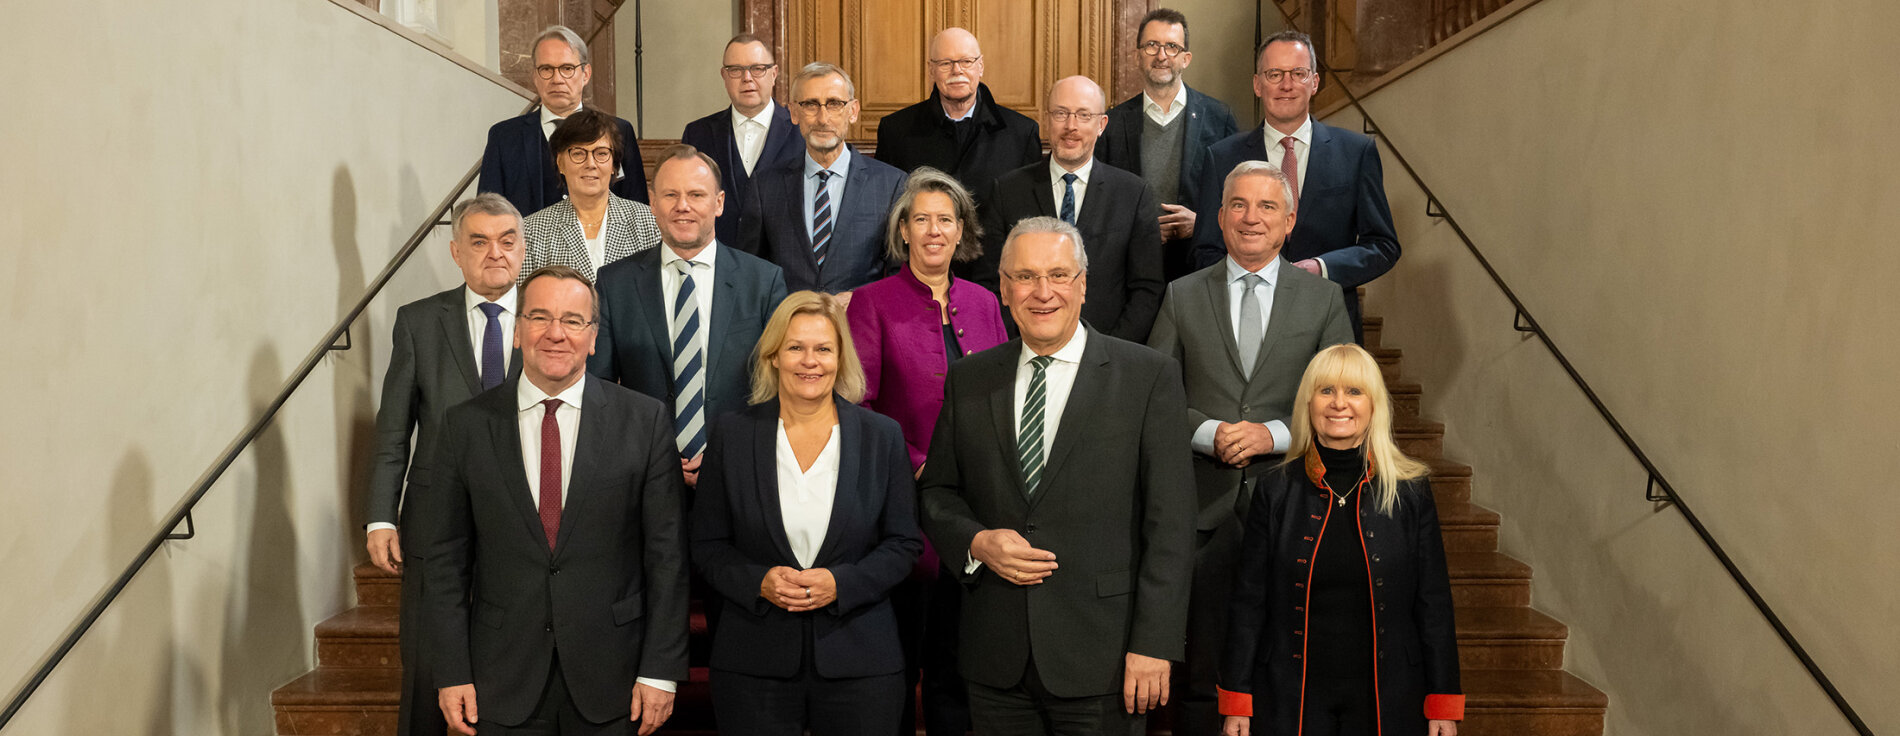 Gruppenfoto mit den Innenministern und Innensenatoren